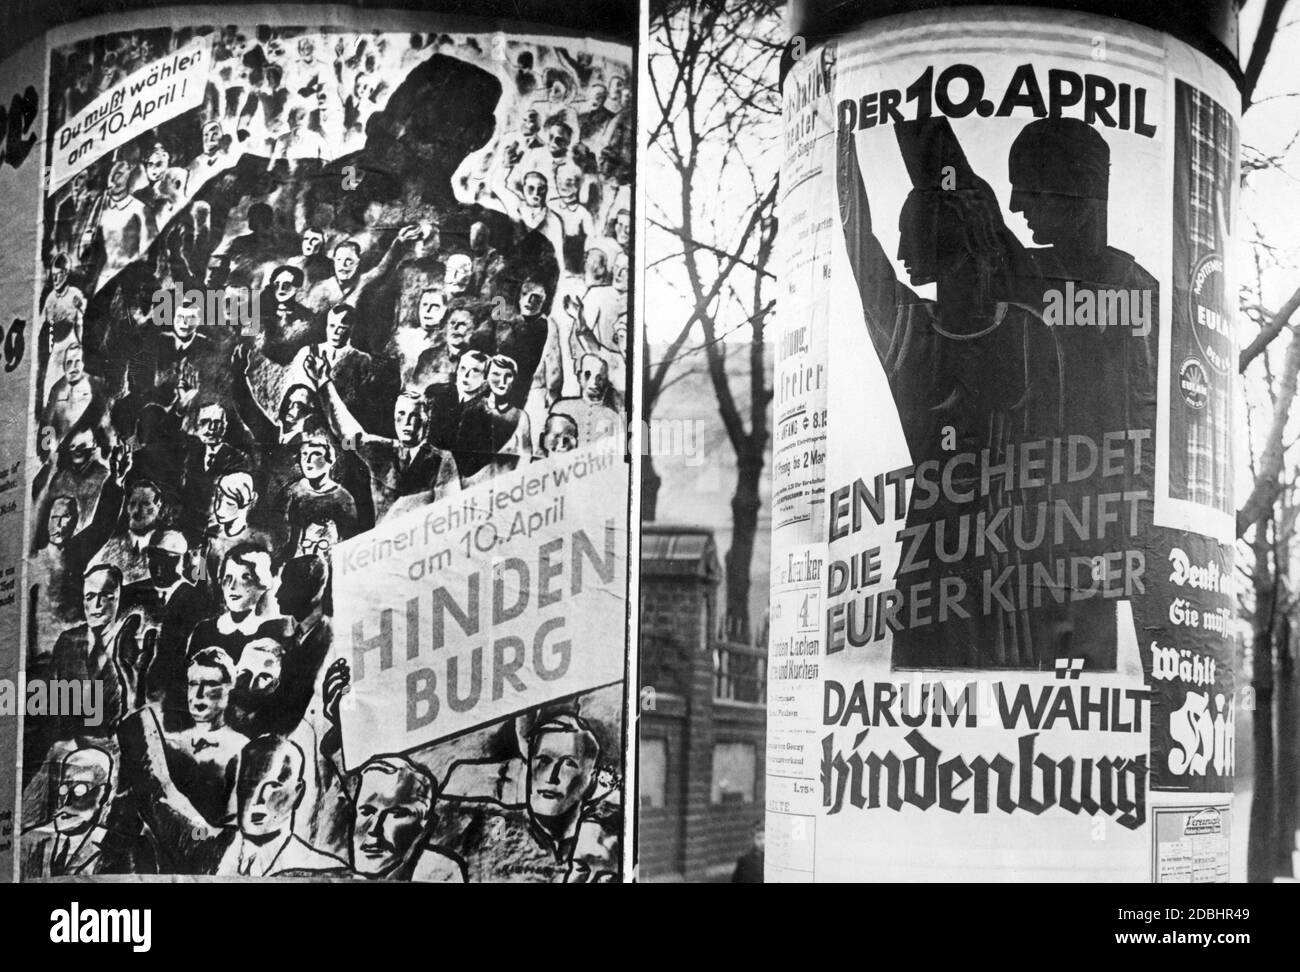 Wahlplakate des Hindenburger Komitees mit dem Aufruf, Hindenburg am 10. April zum Reichspräsidenten zu wählen. Stockfoto